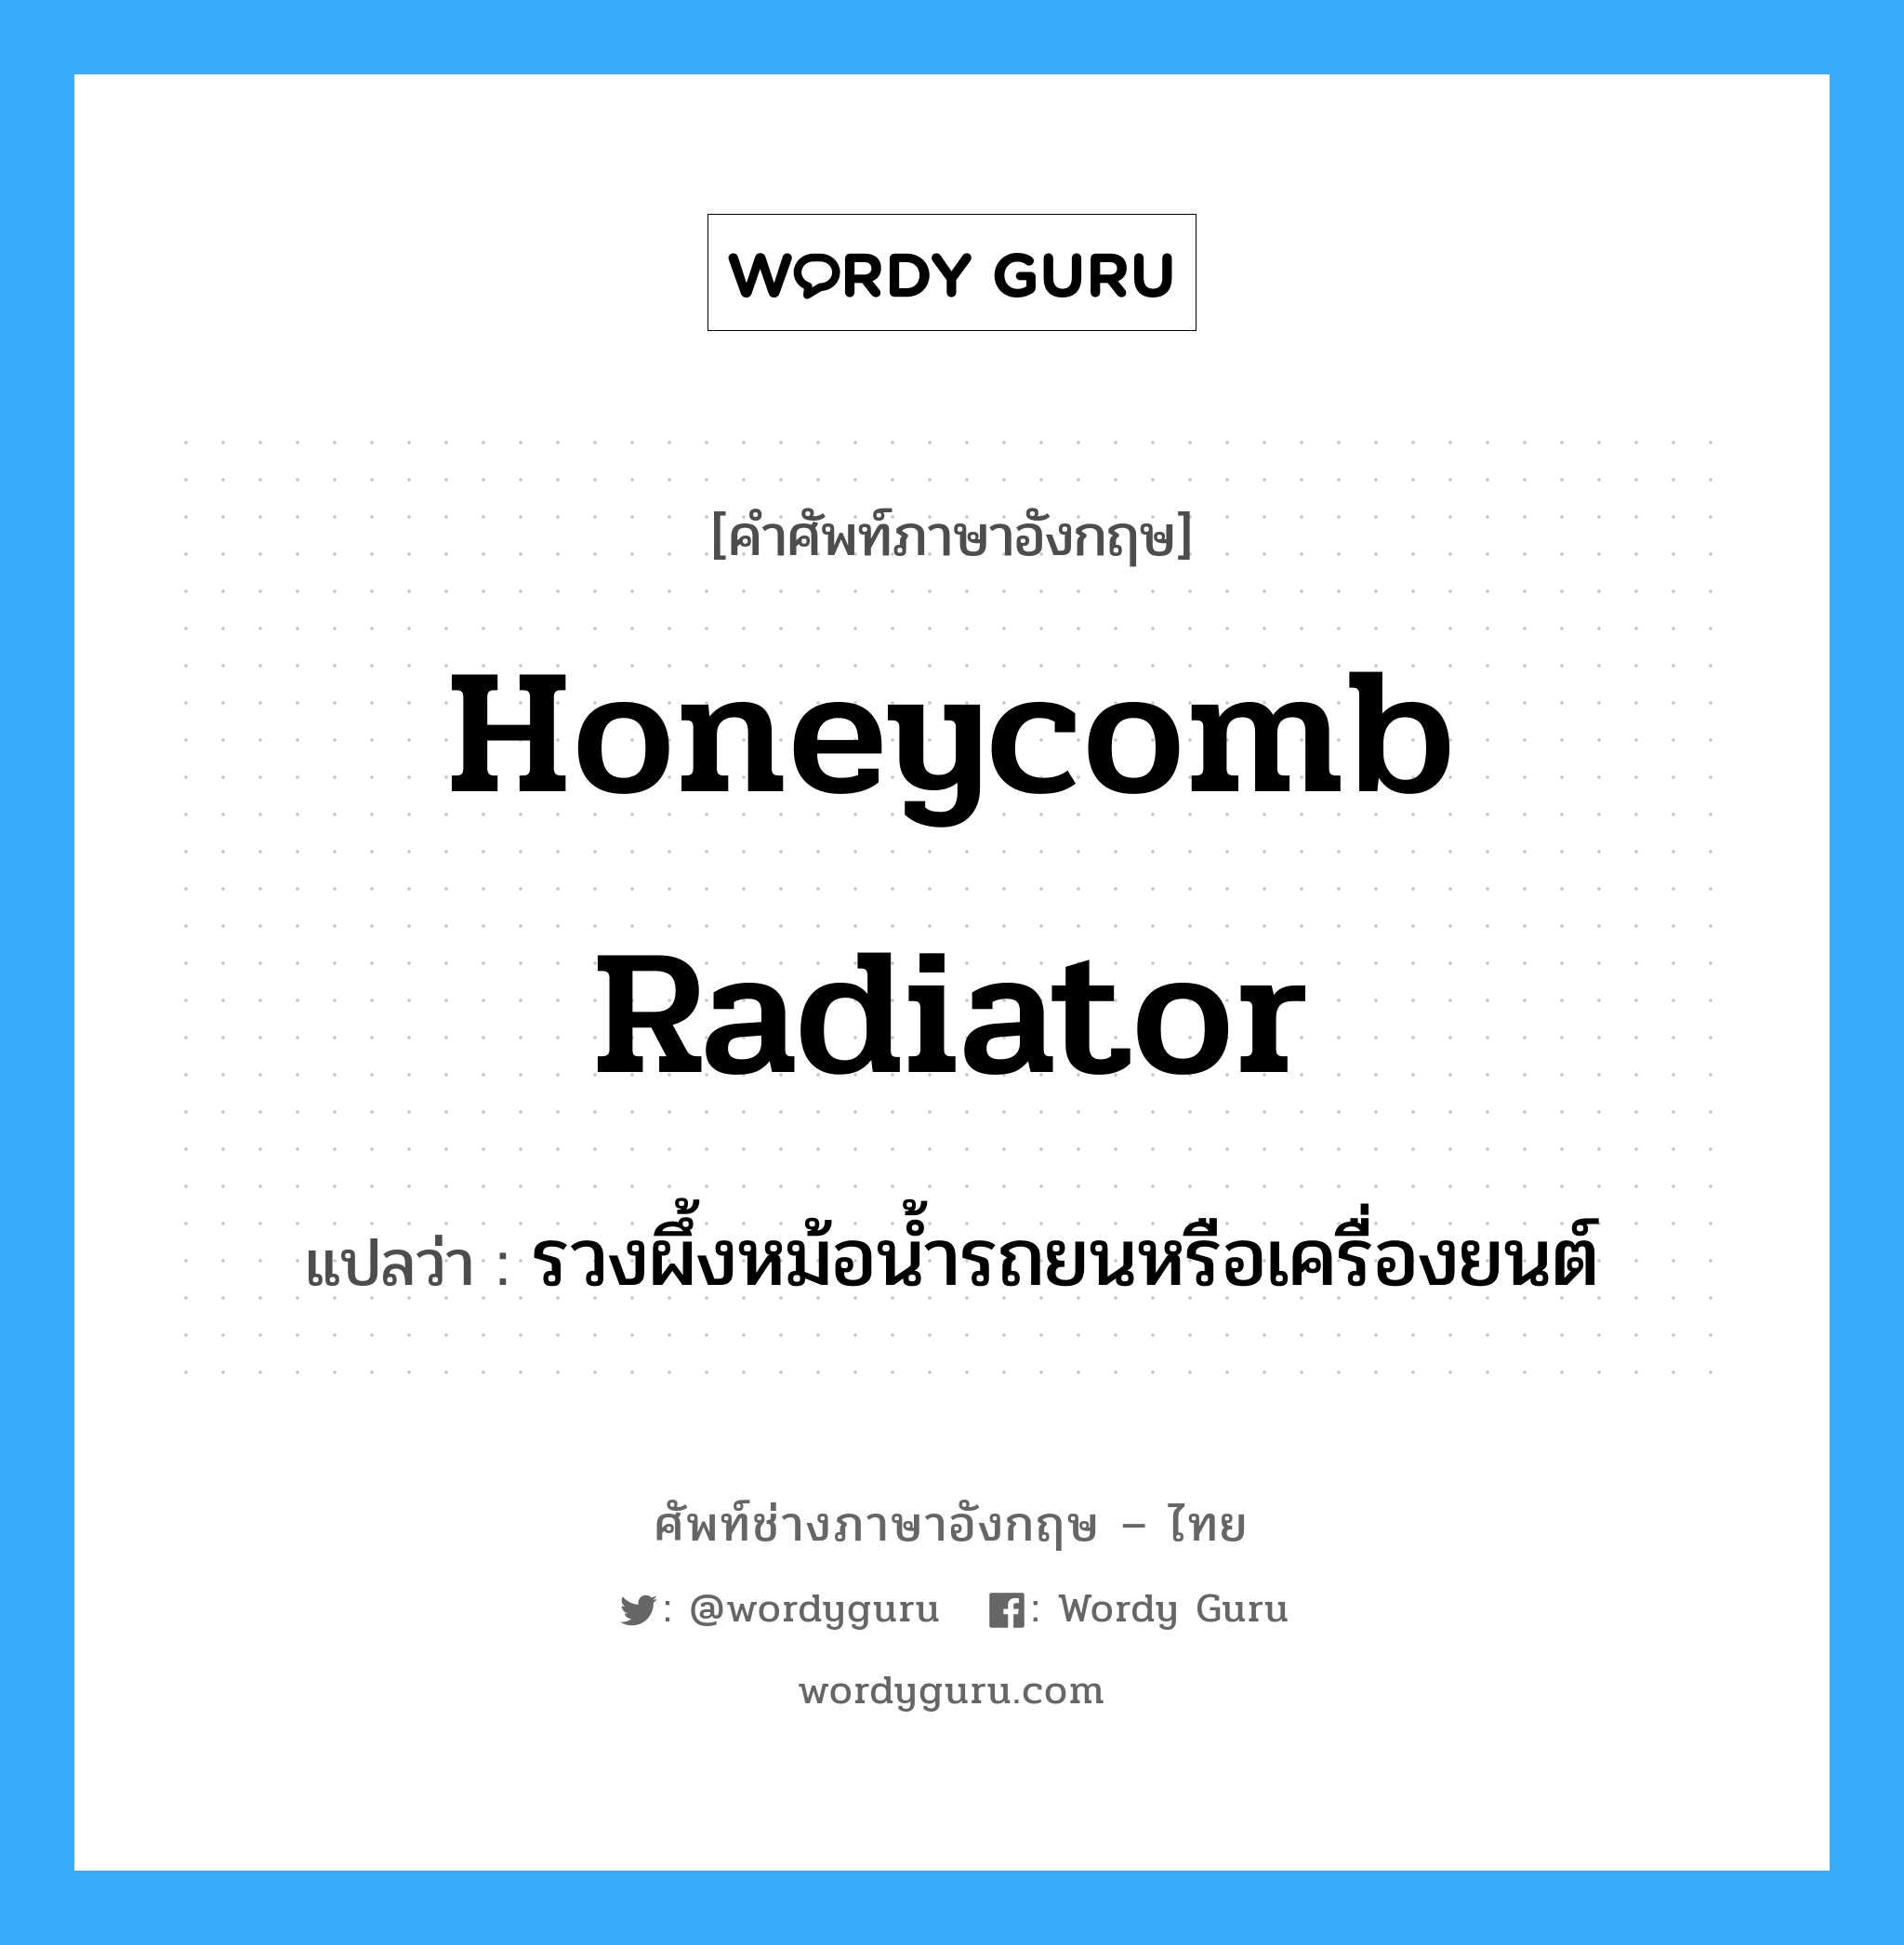 honeycomb radiator แปลว่า?, คำศัพท์ช่างภาษาอังกฤษ - ไทย honeycomb radiator คำศัพท์ภาษาอังกฤษ honeycomb radiator แปลว่า รวงผึ้งหม้อน้ำรถยนหรือเครื่องยนต์